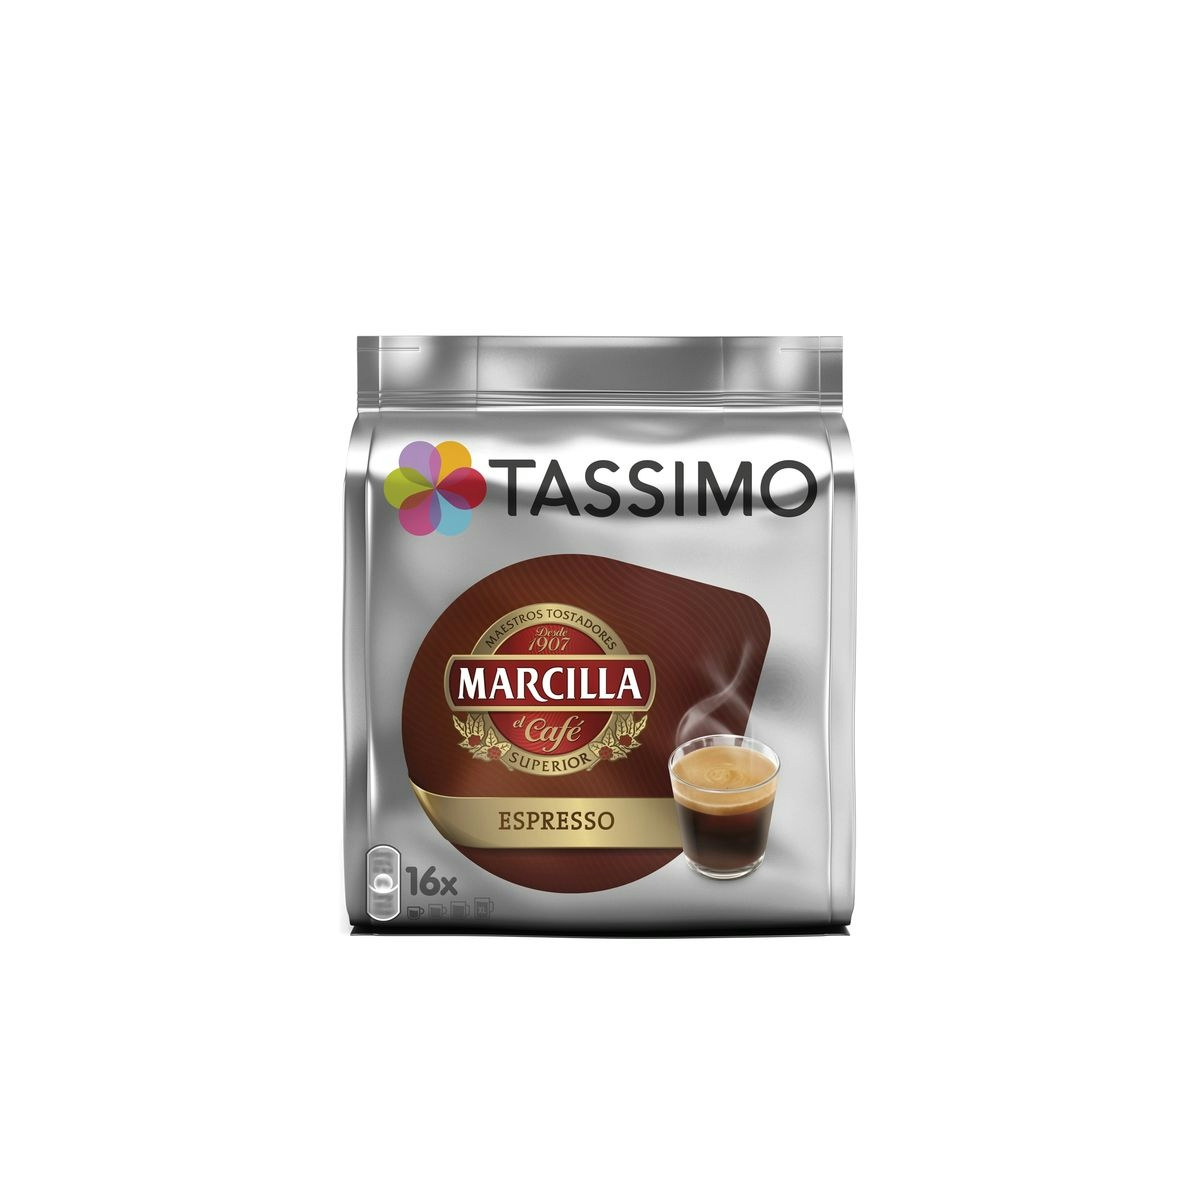 Café marcilla TASSIMO espresso estuche 16 cápsulas